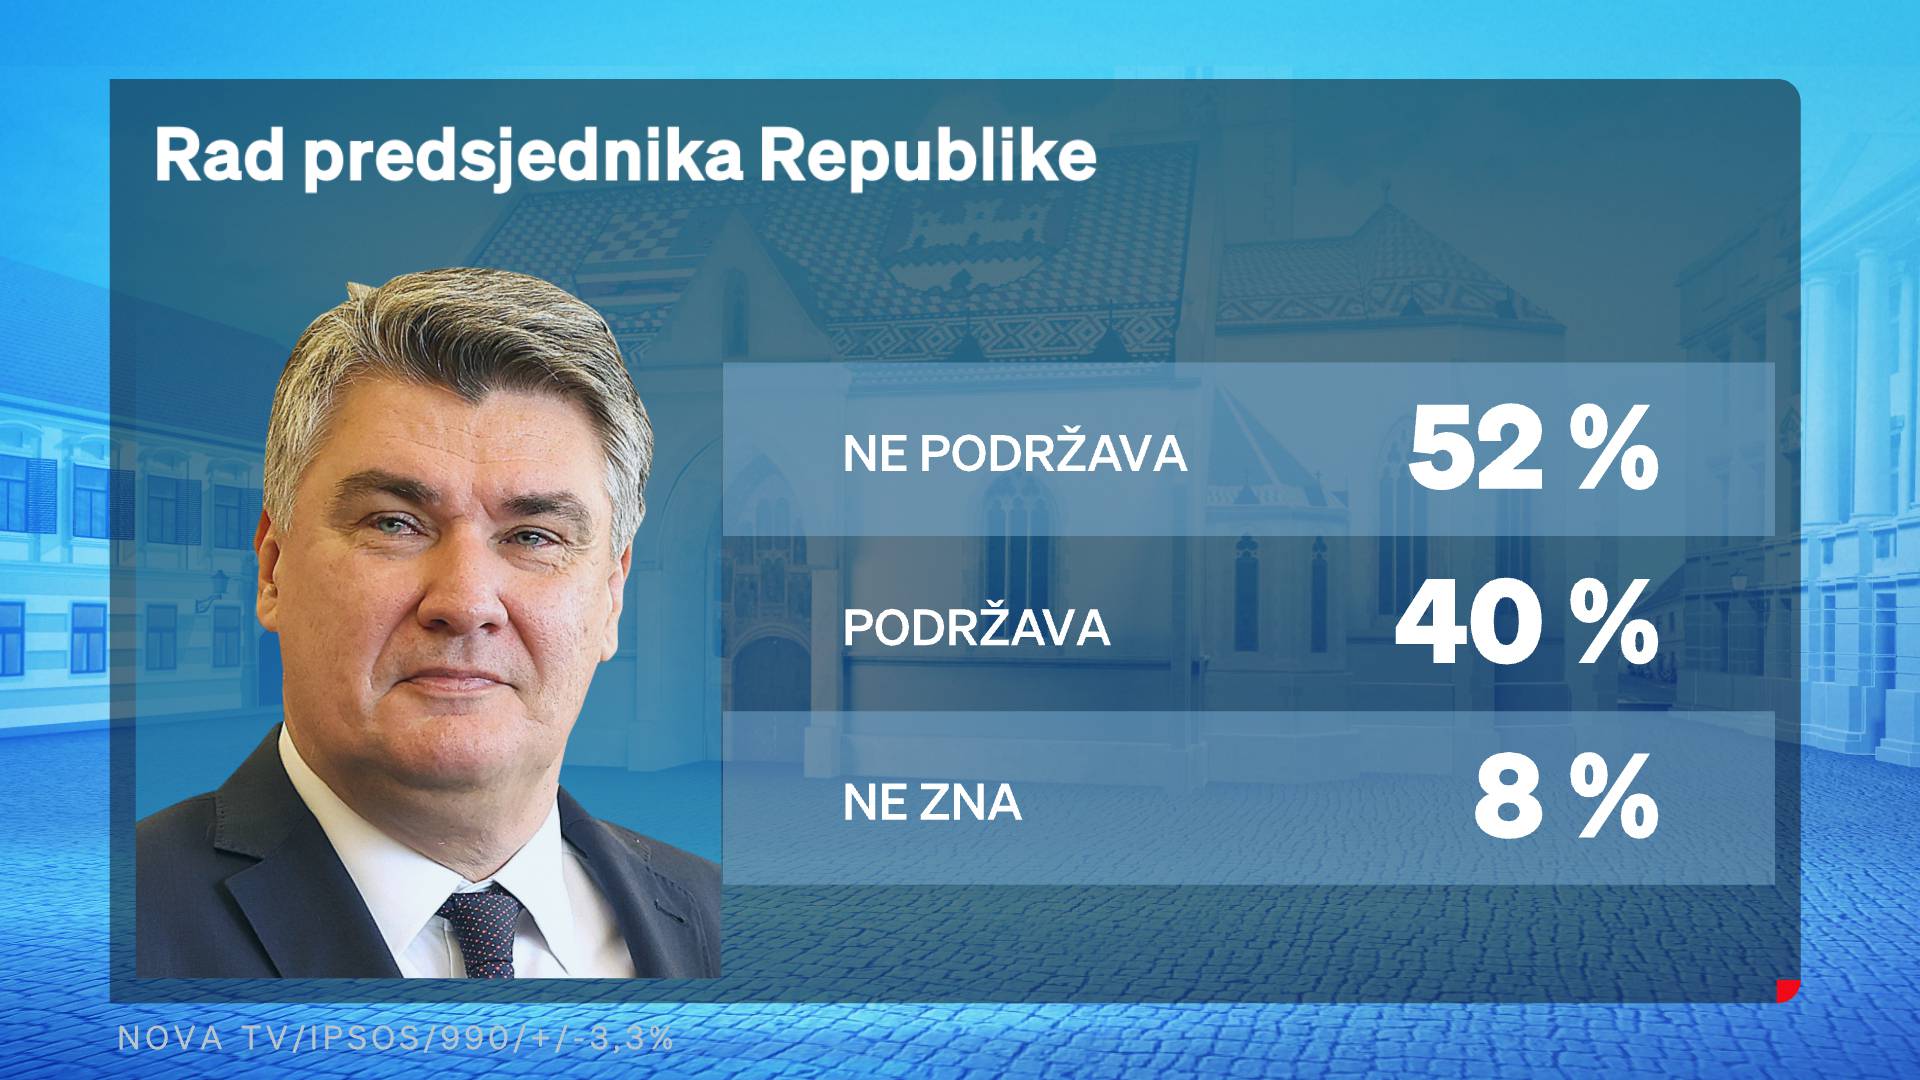 HDZ i dalje na vrhu, Milanović najpozitivniji političar. 67 posto građana ne odobrava rad Vlade